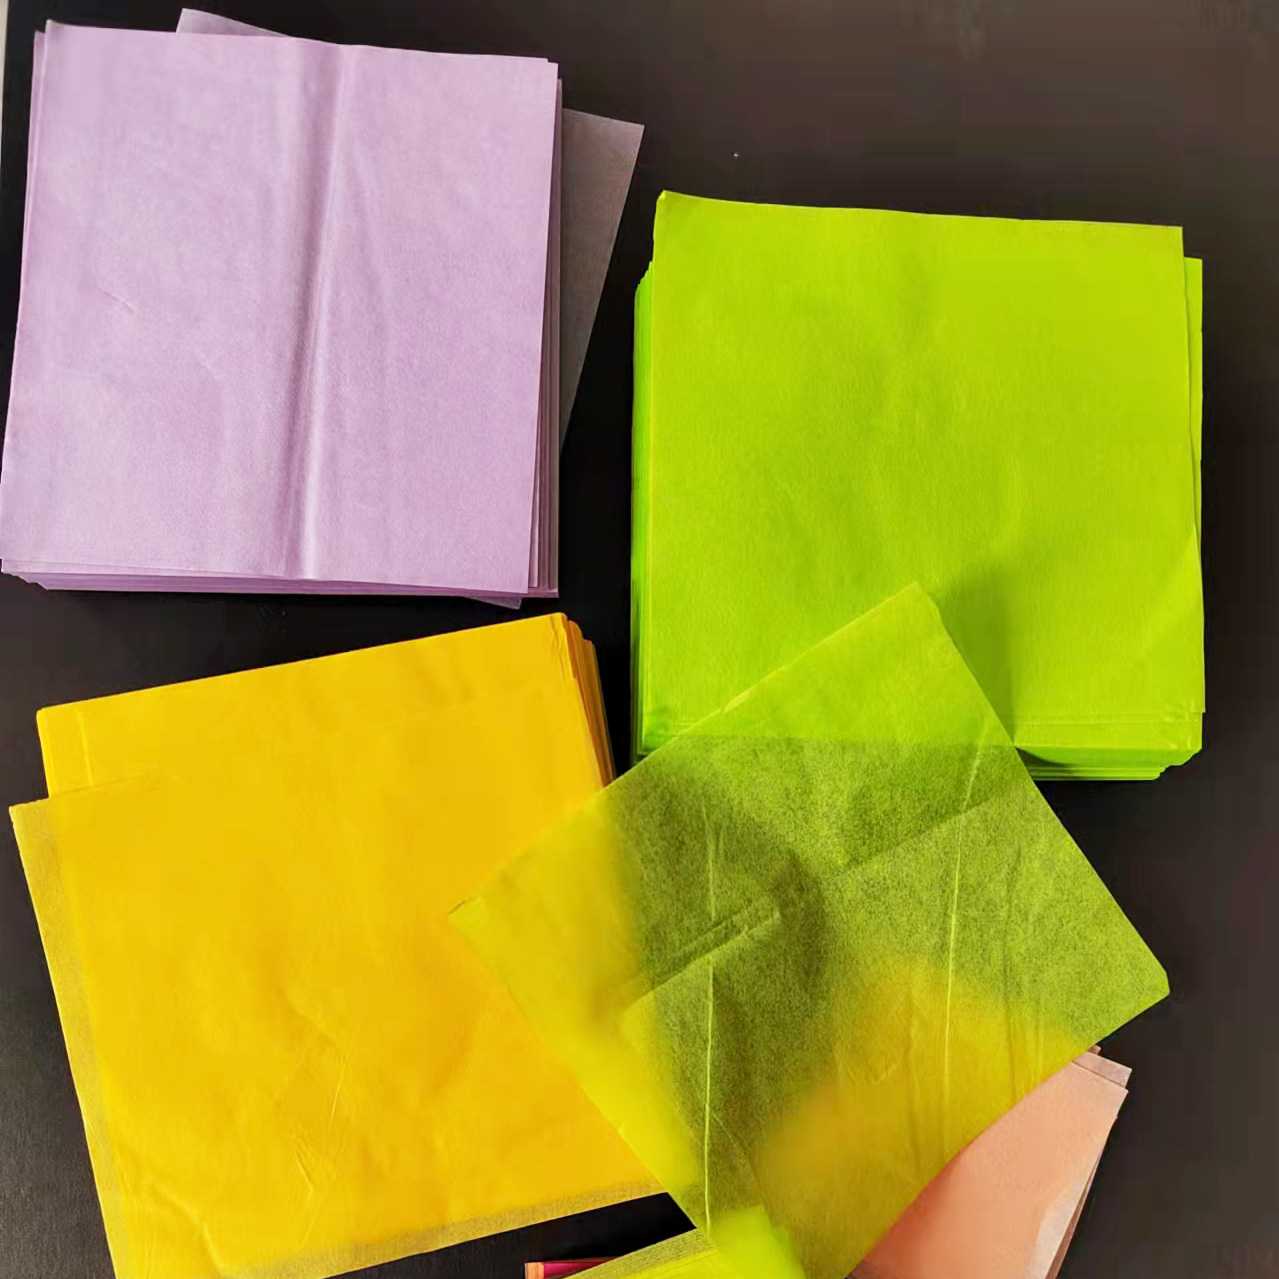 轻薄雪梨纸拷贝纸手揉纸搓纸画手工折纸折花球用纸幼儿园手工材料